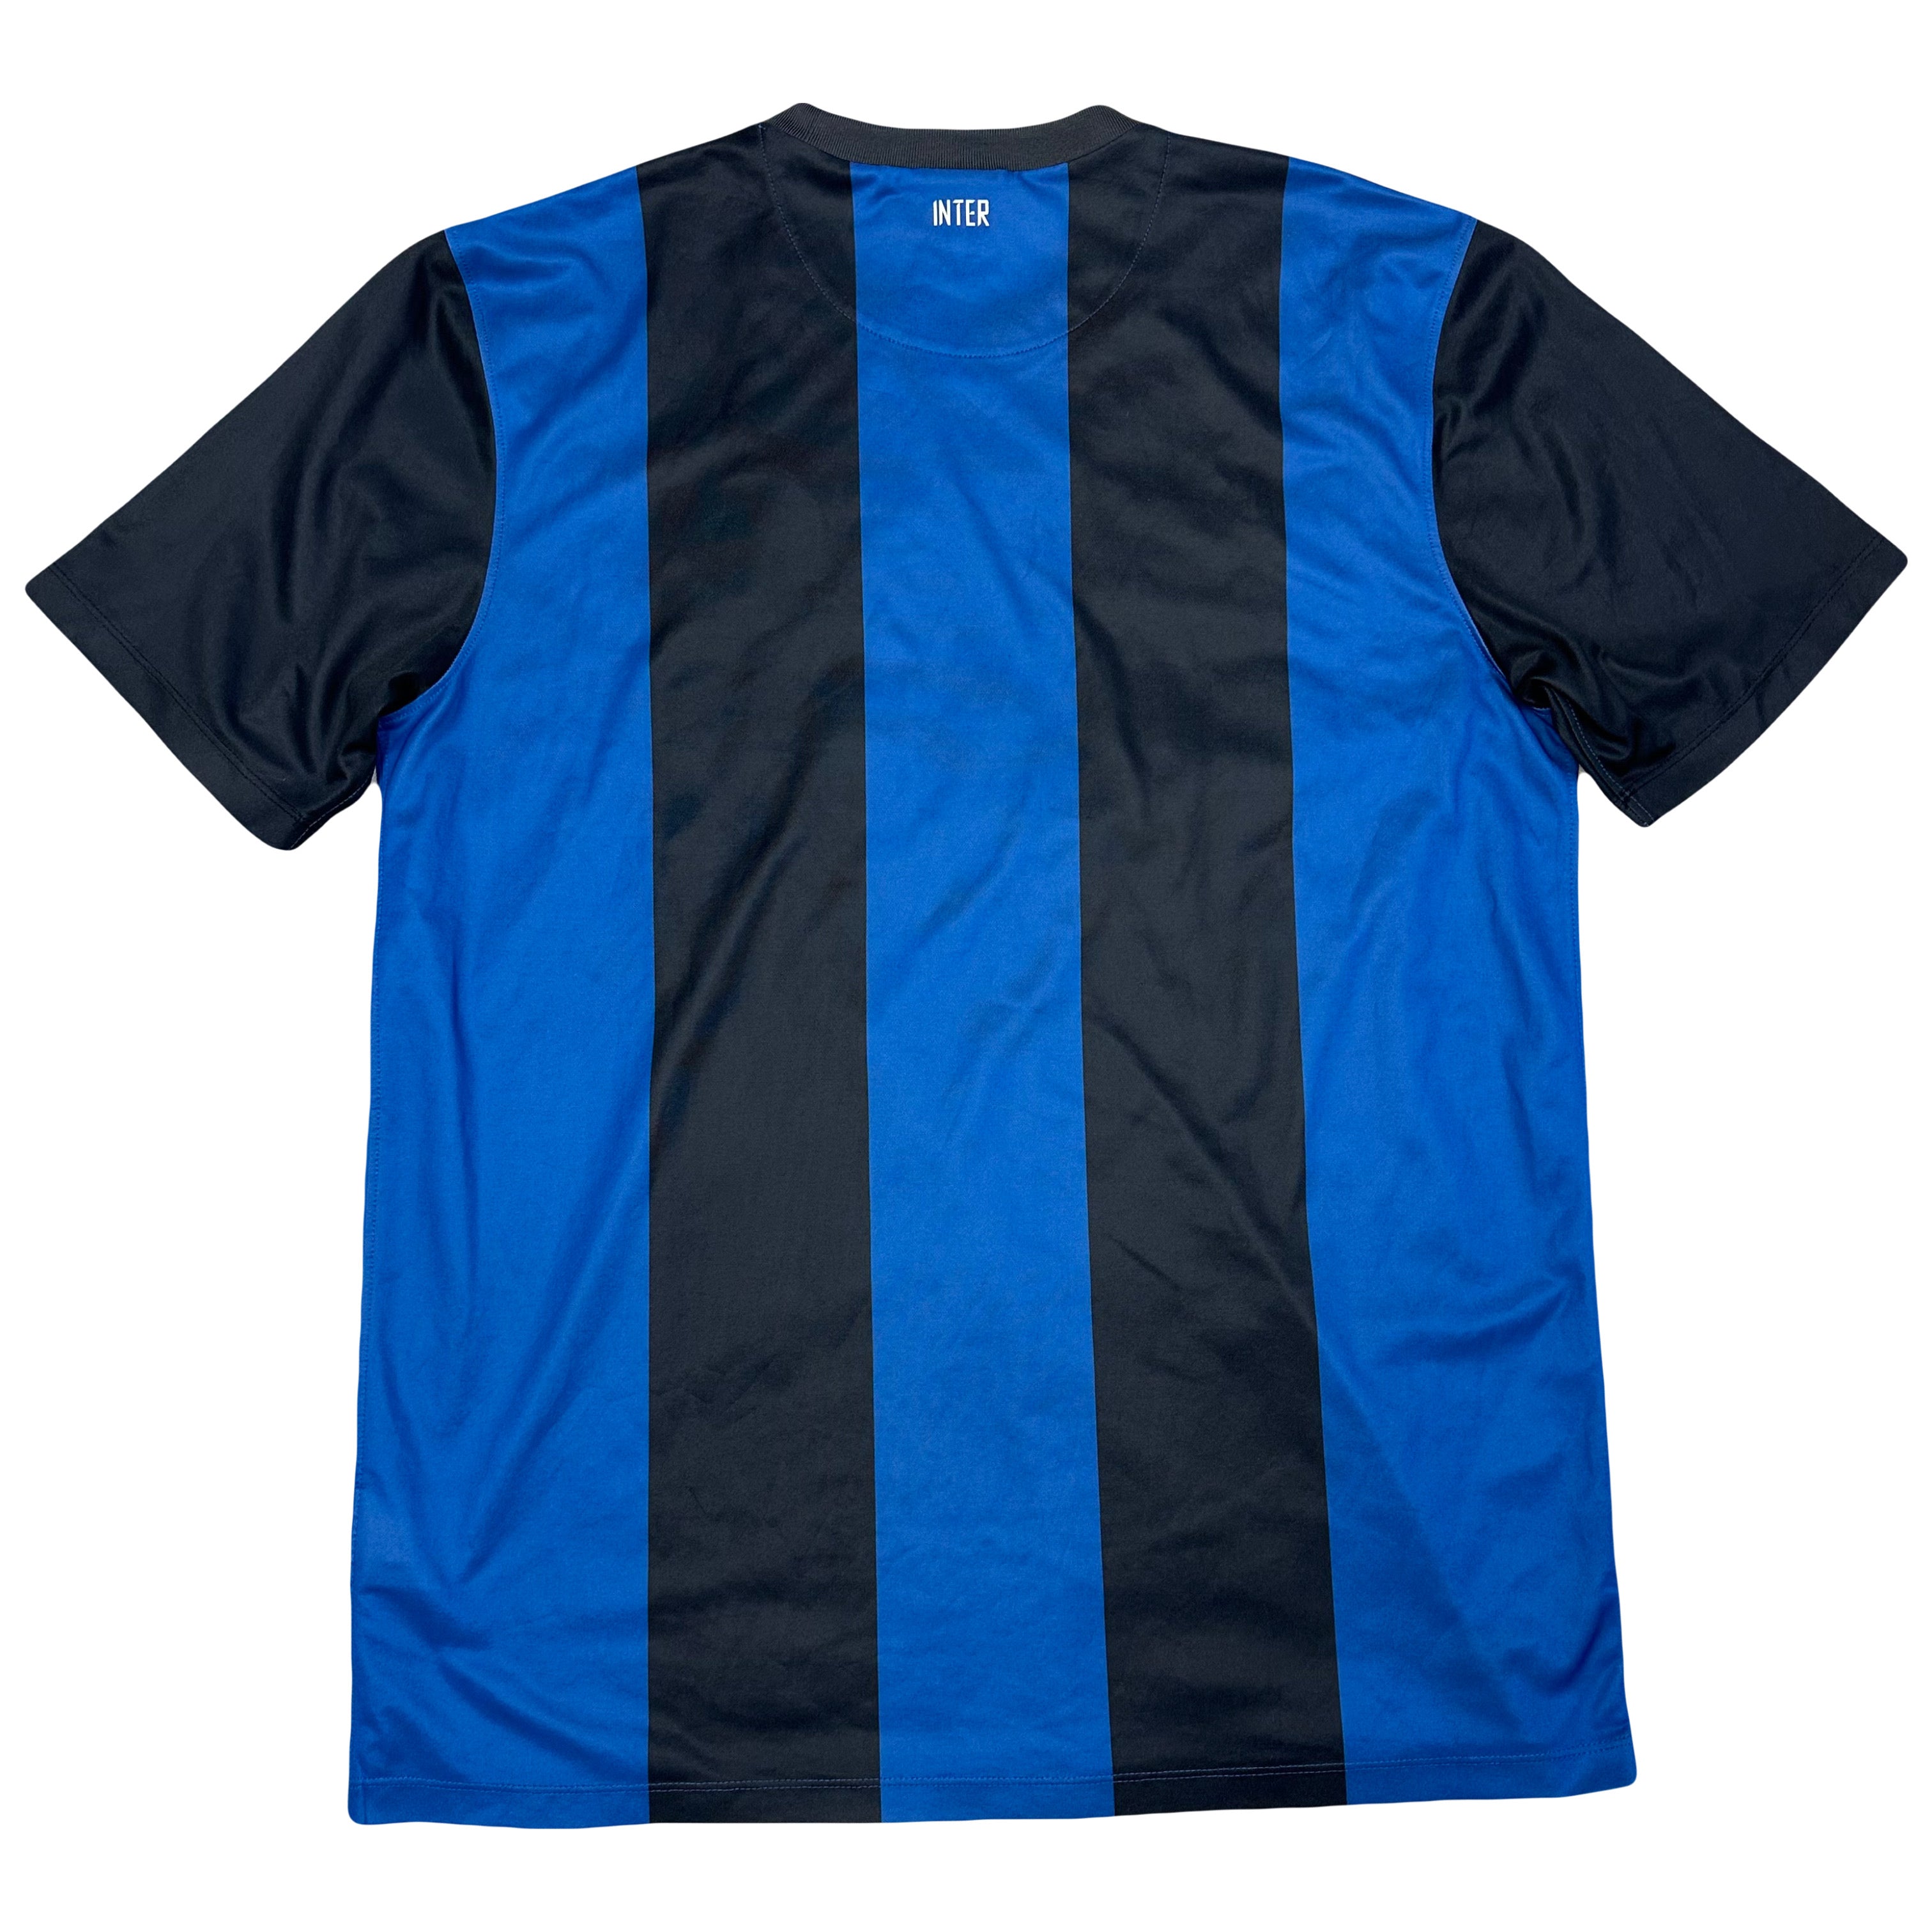 Nike 2012/13 Inter Milan Home Shirt ( L )